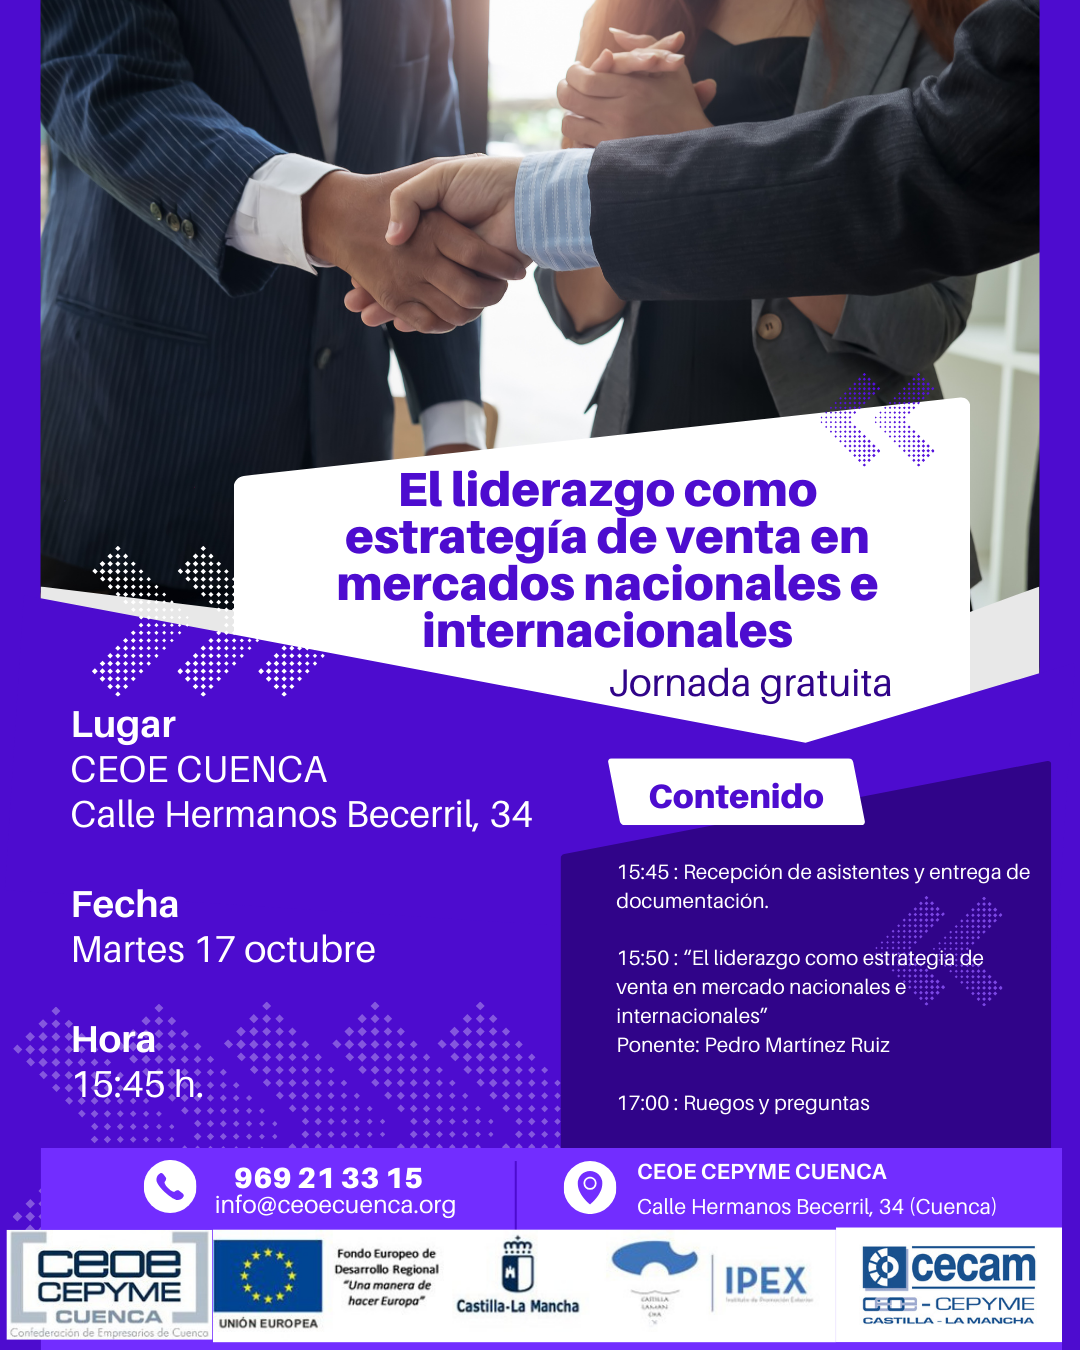 CEOE CEPYME Cuenca invita a sus empresarios a participar en una jornada sobre liderazgo y mercados internacionales